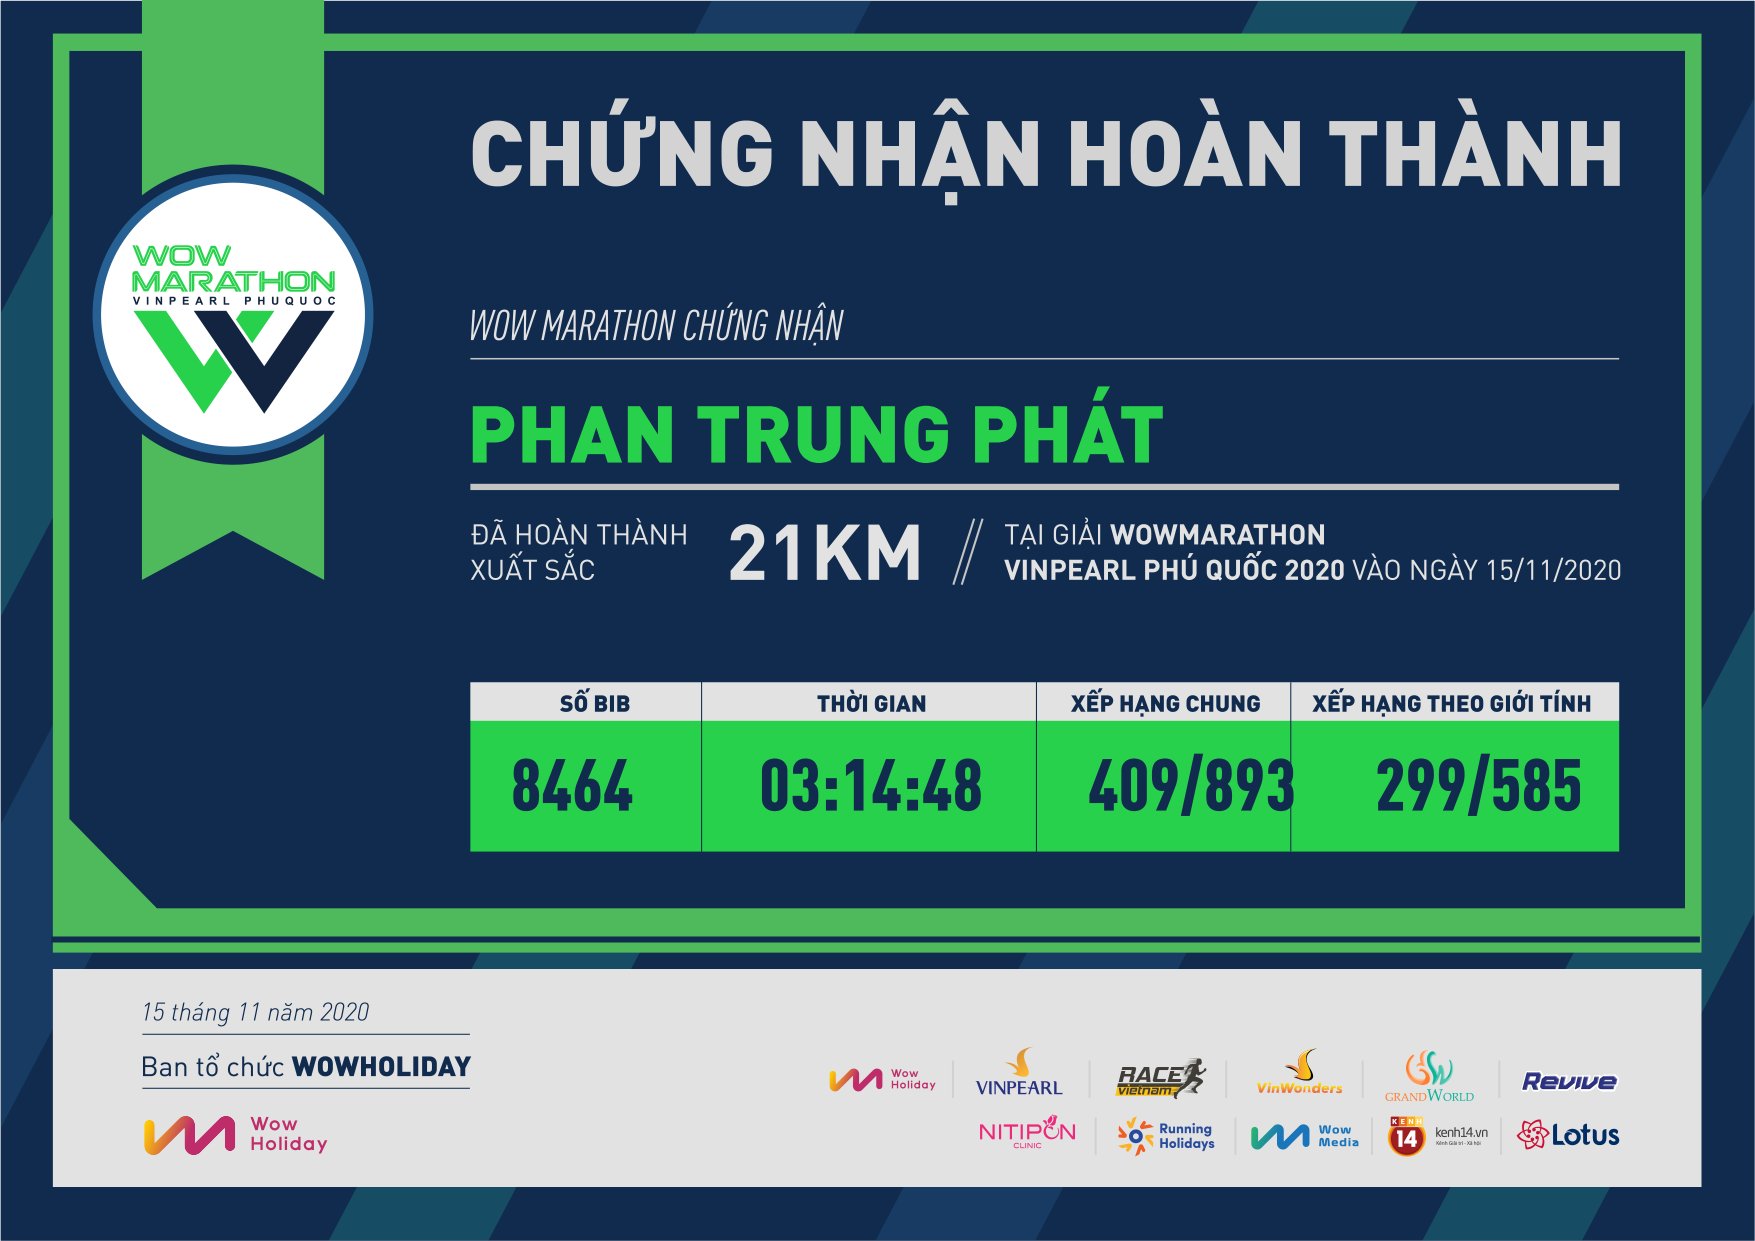 8464 - Phan Trung Phát